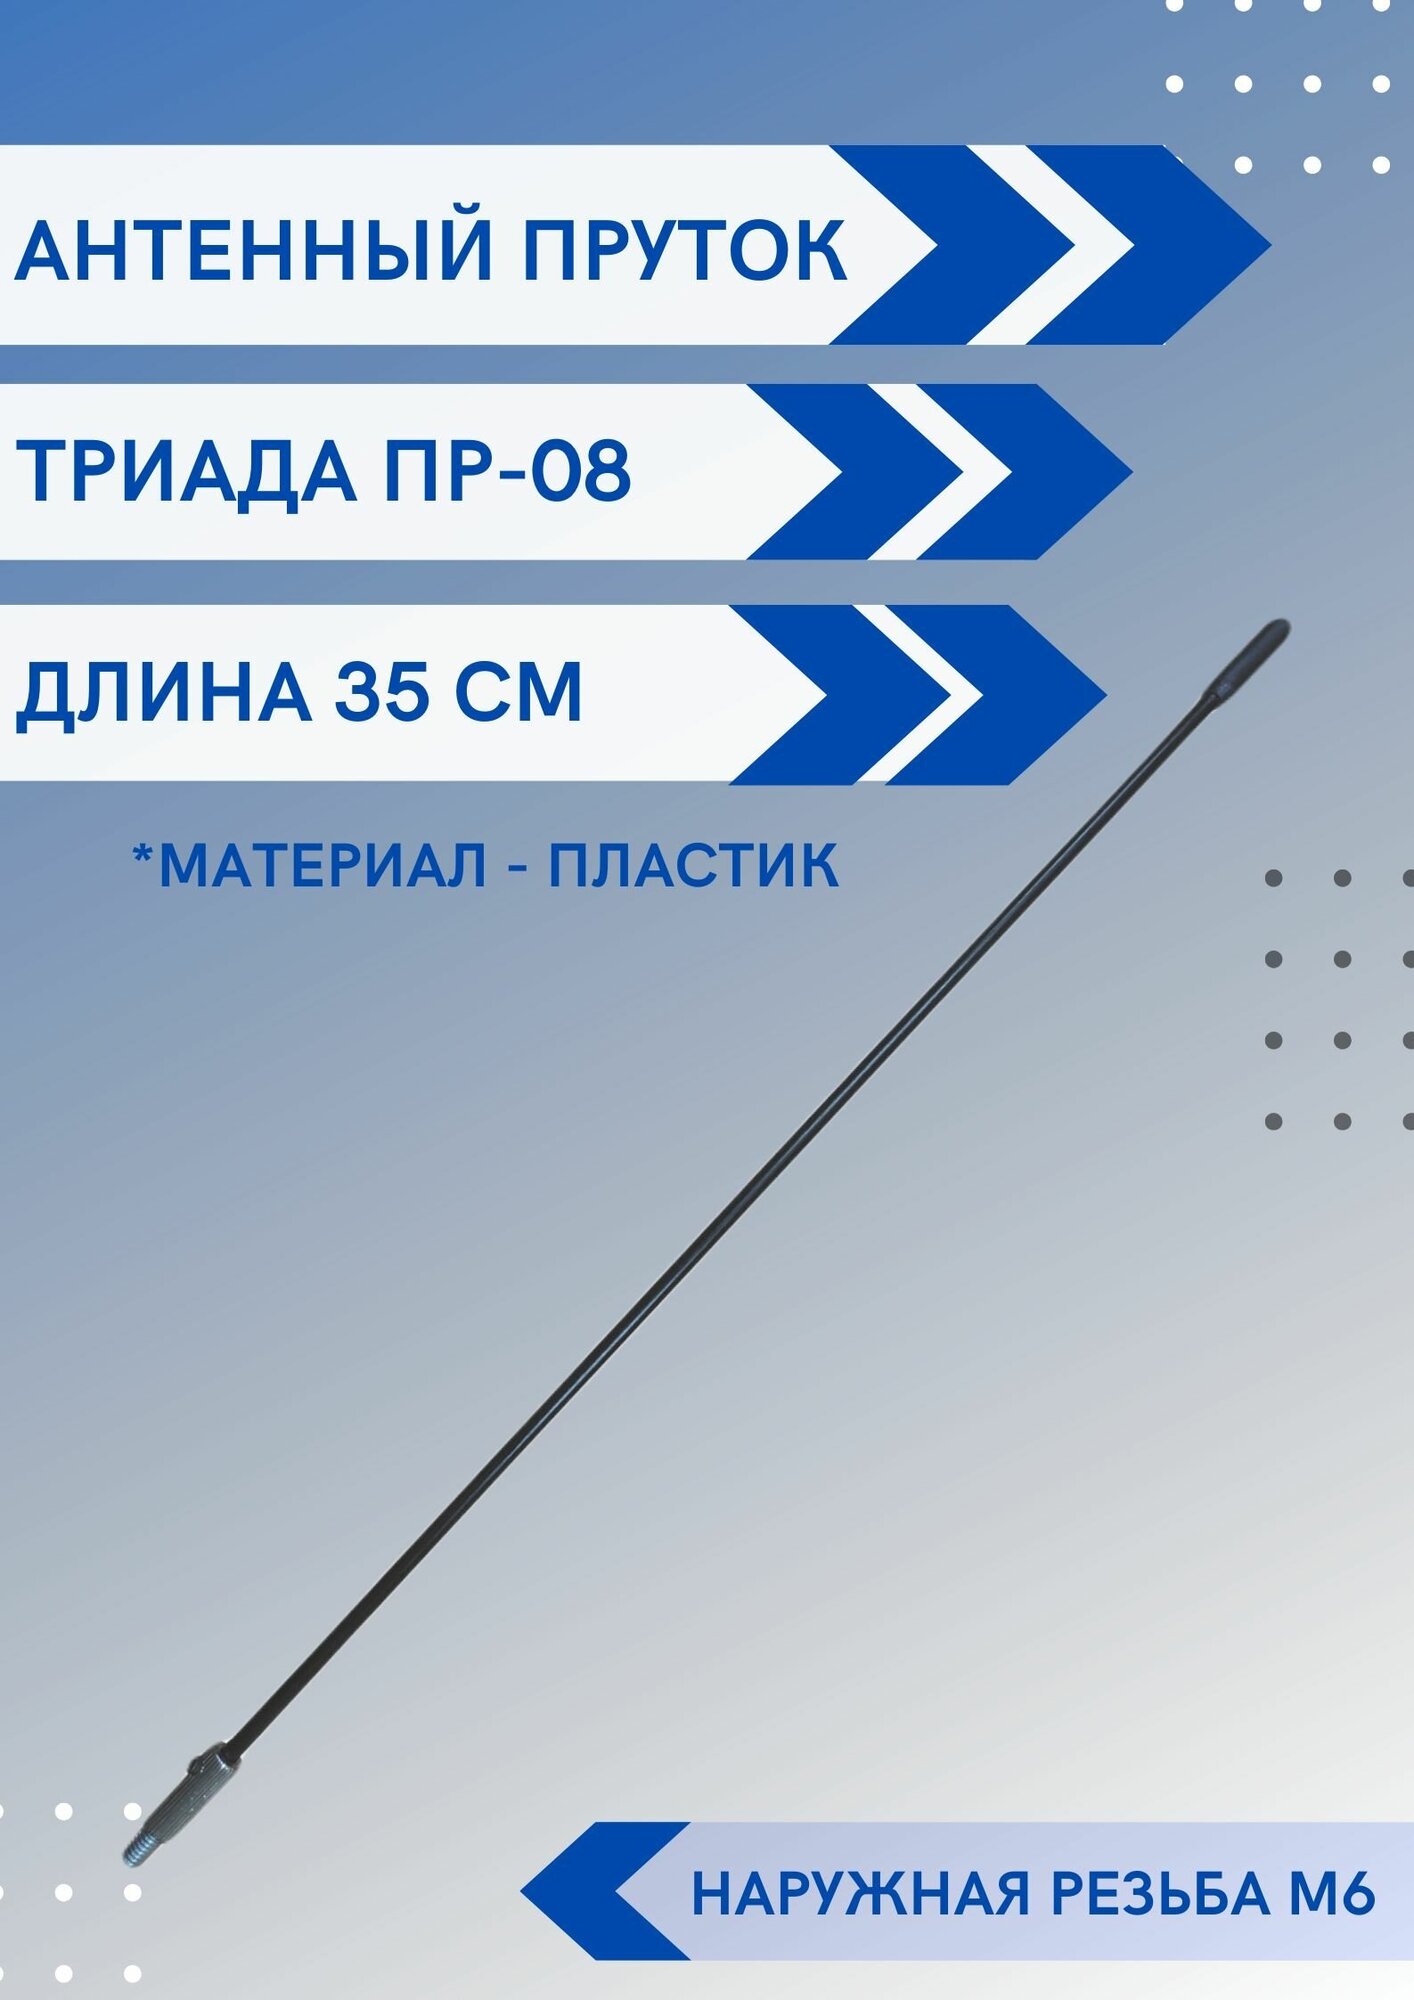 Ремкомплект автомобильной антенны пруток Триада Пр-08 длина 35 см резьба м6 наружная